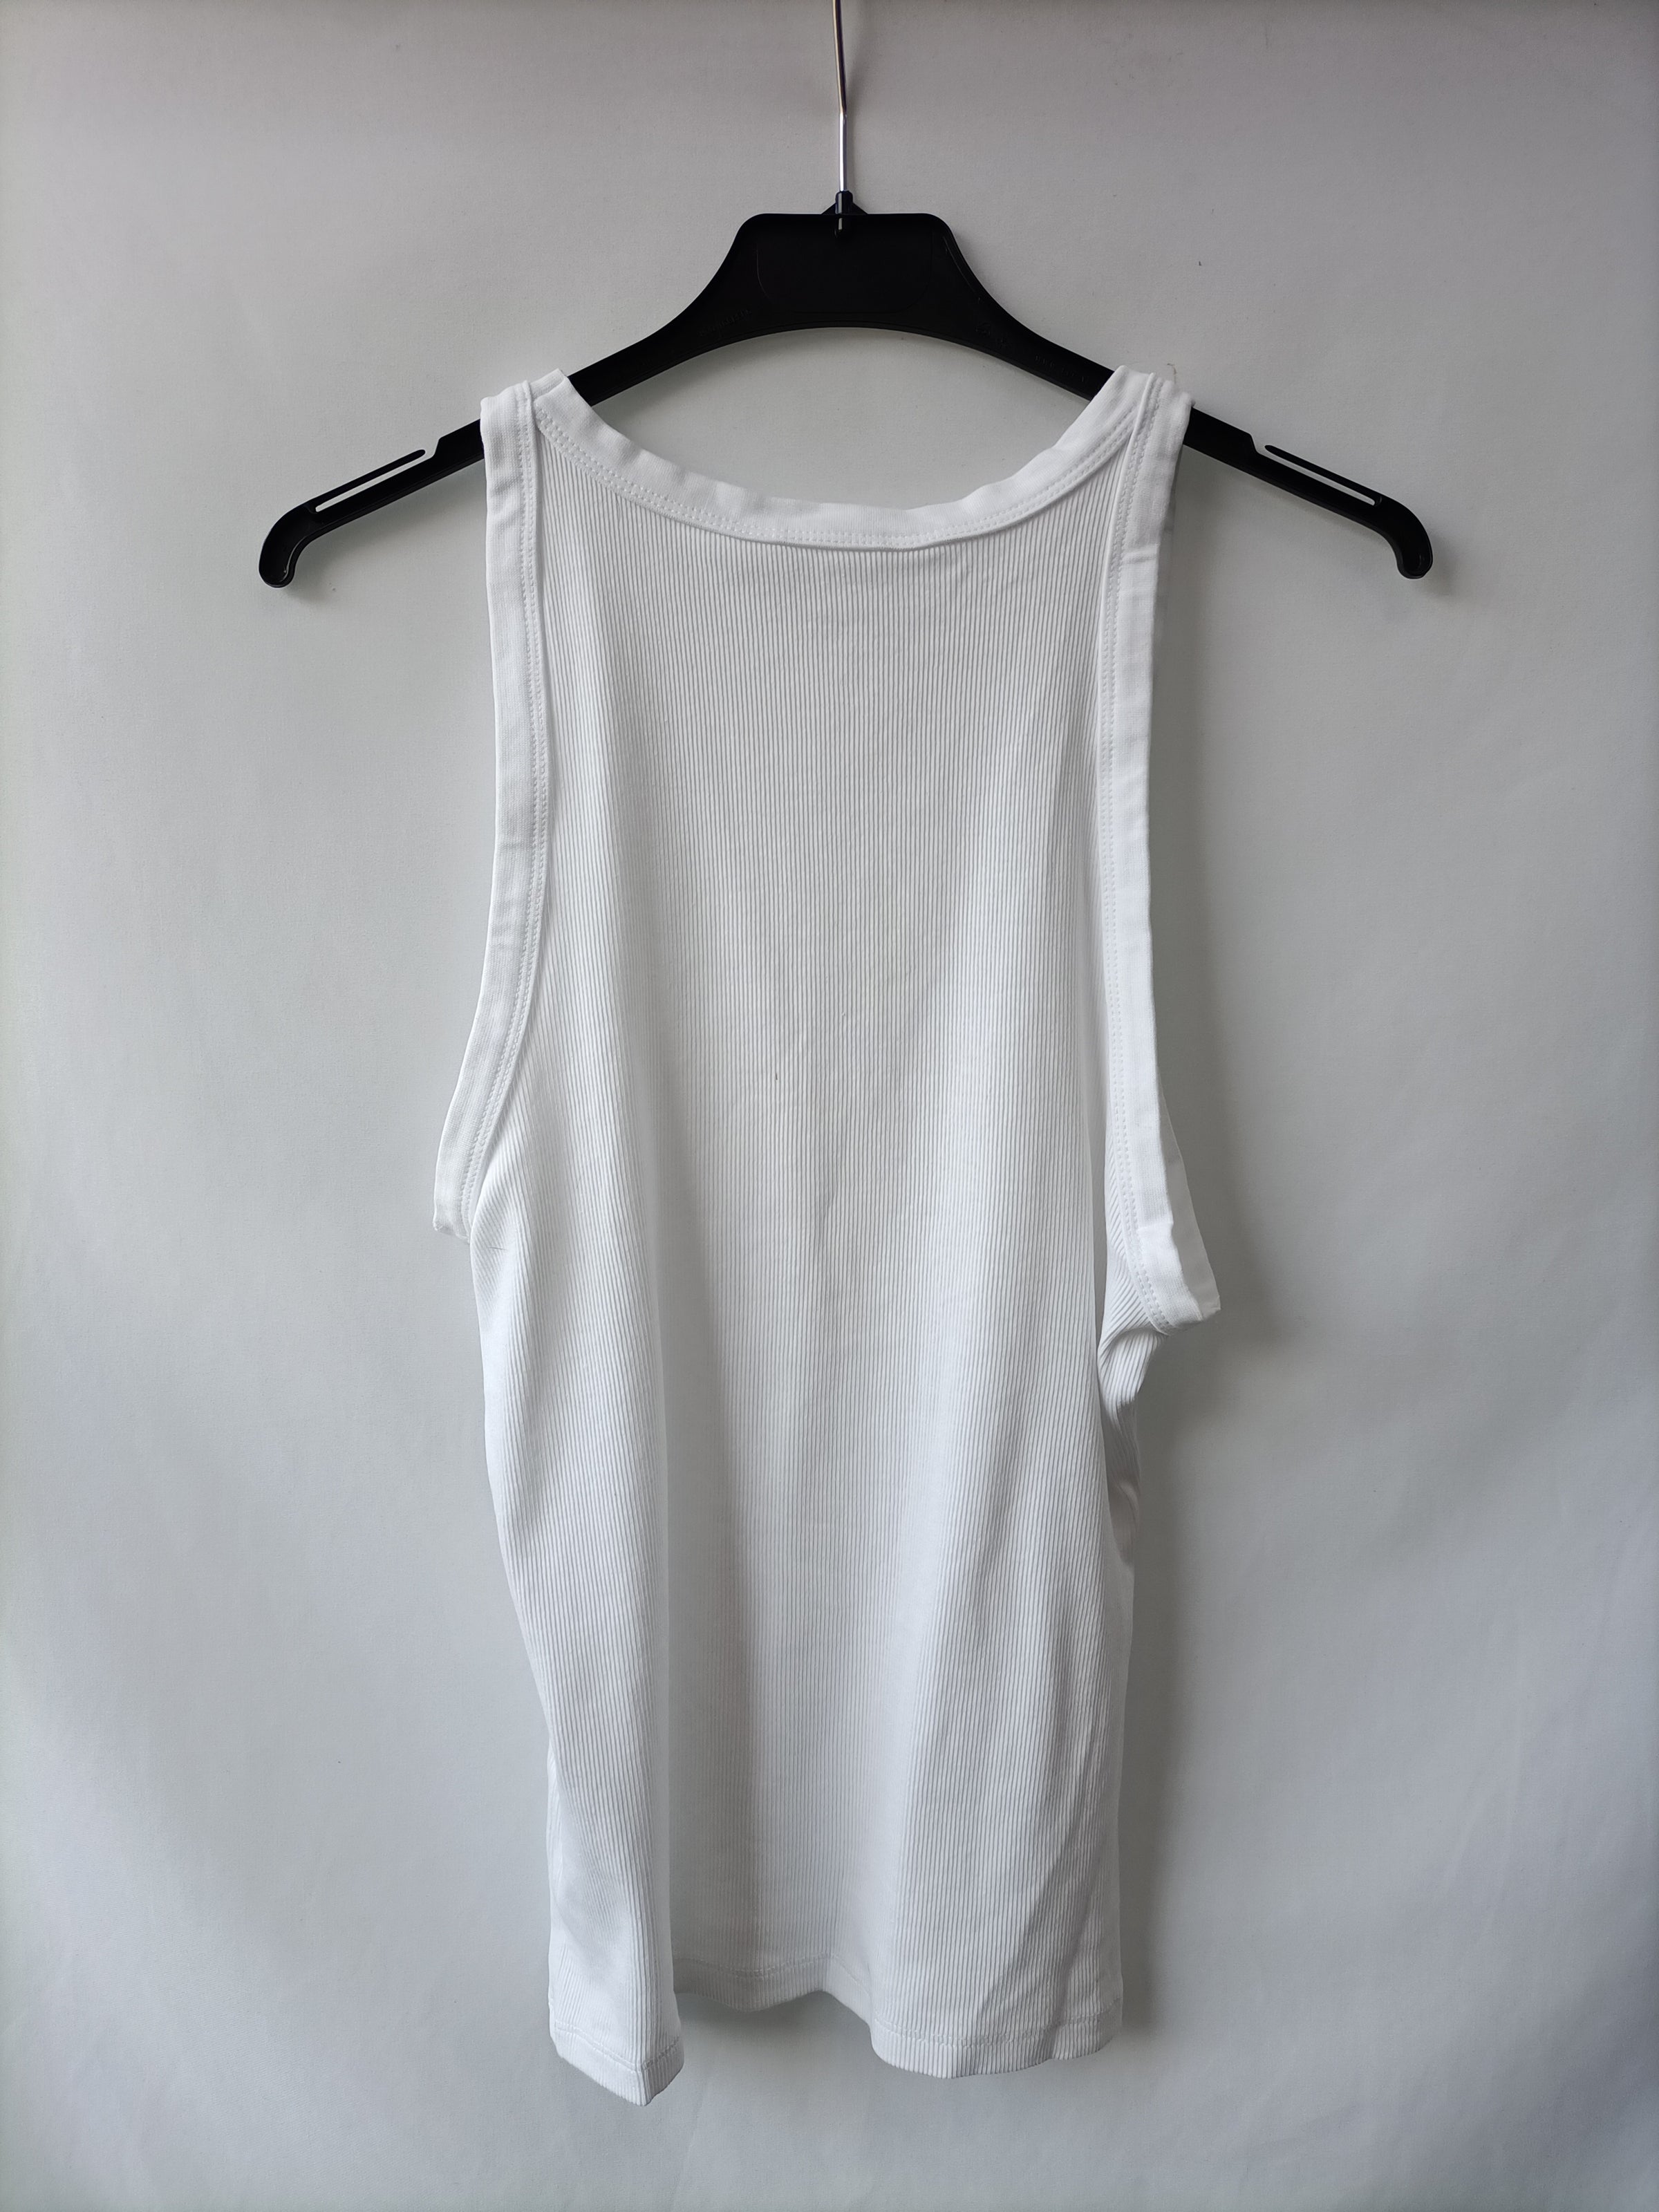 Camiseta blanca T.m – market